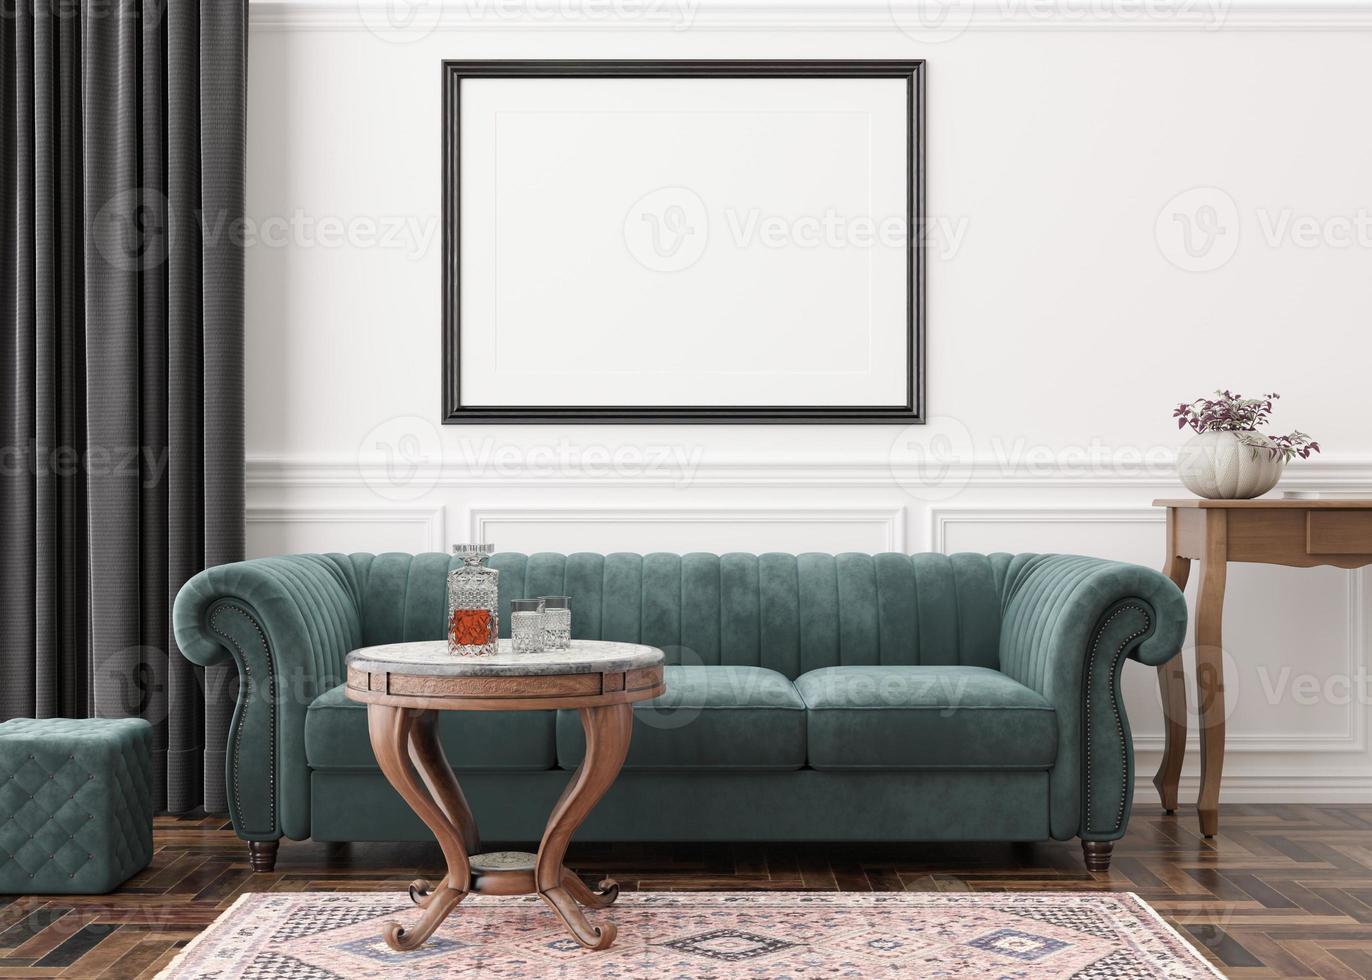 cadre photo horizontal vide sur un mur blanc dans un salon moderne. maquette d'intérieur dans un style classique. gratuit, copiez l'espace pour votre photo, affiche. canapé, table, parquet, moquette. rendu 3d.